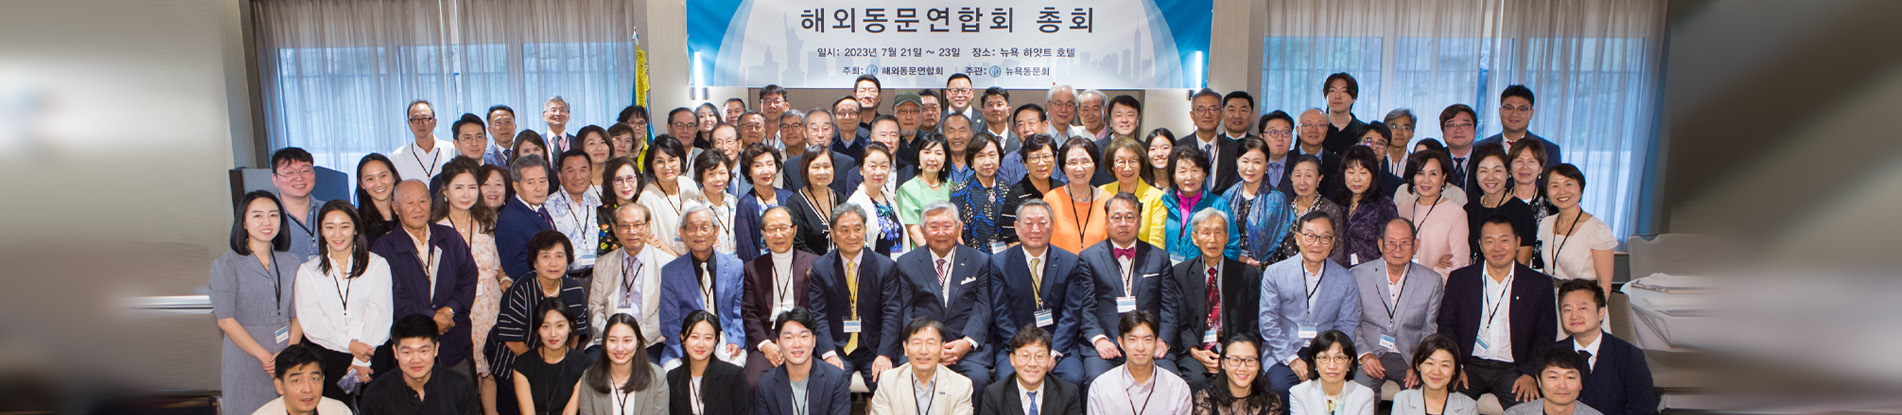 제3회 ‘한국외국어대학교 해외동문연합회 총회’ 개최